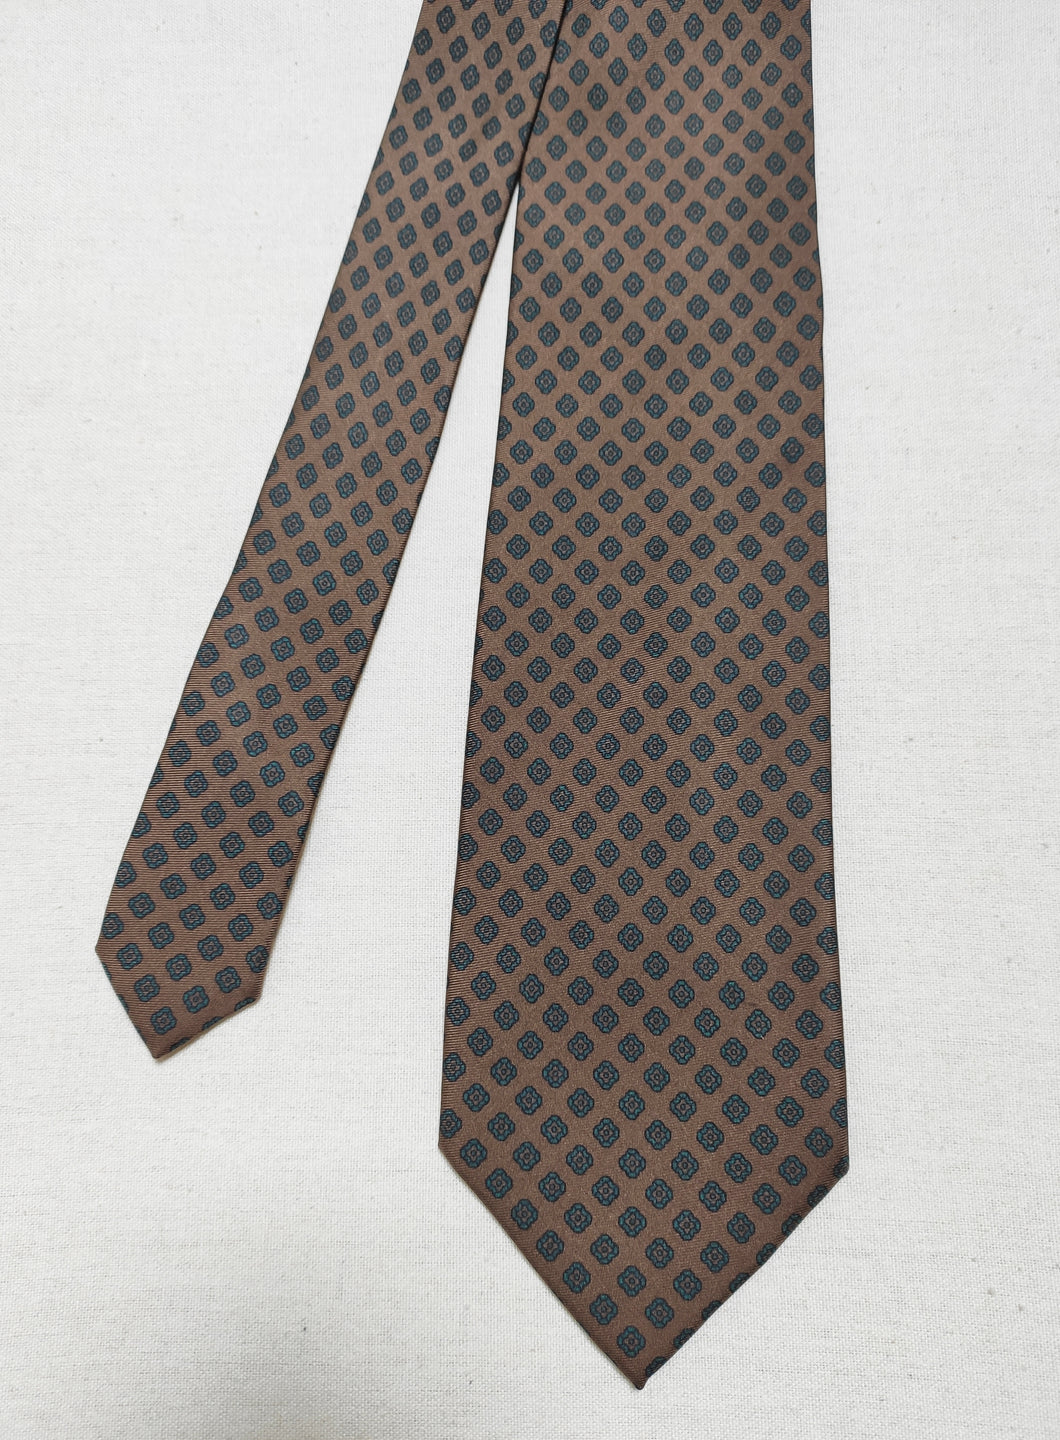 Berteil Paris cravate en soie à motif géométrique